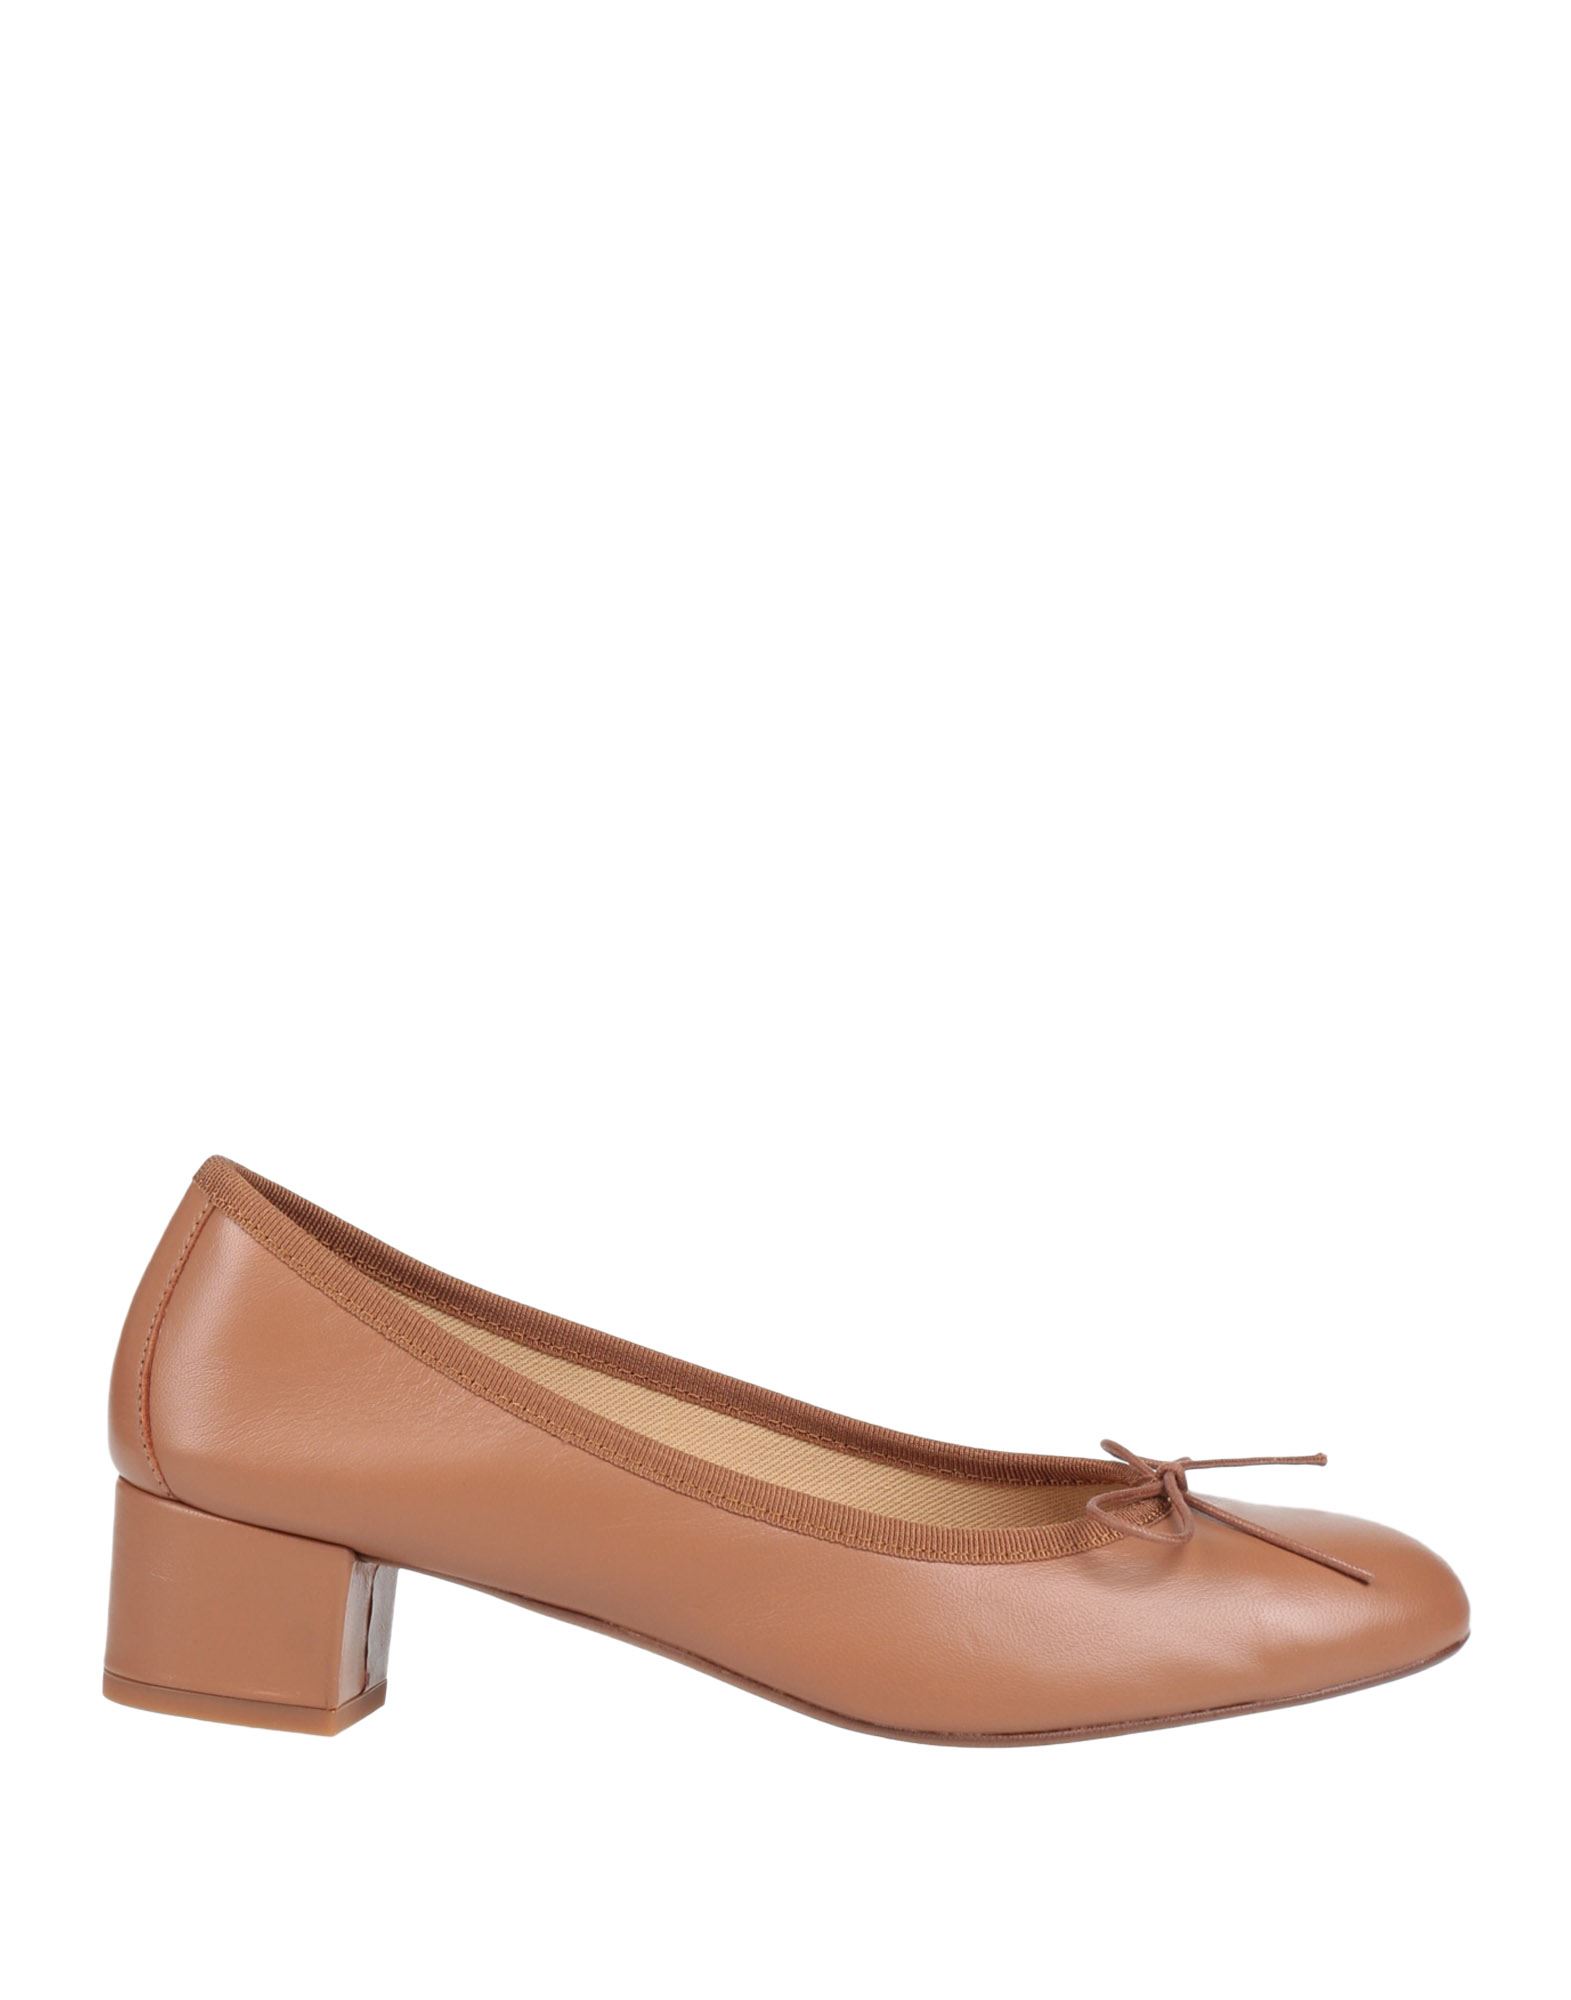 BALLERETTE Shoes for Women | ModeSens